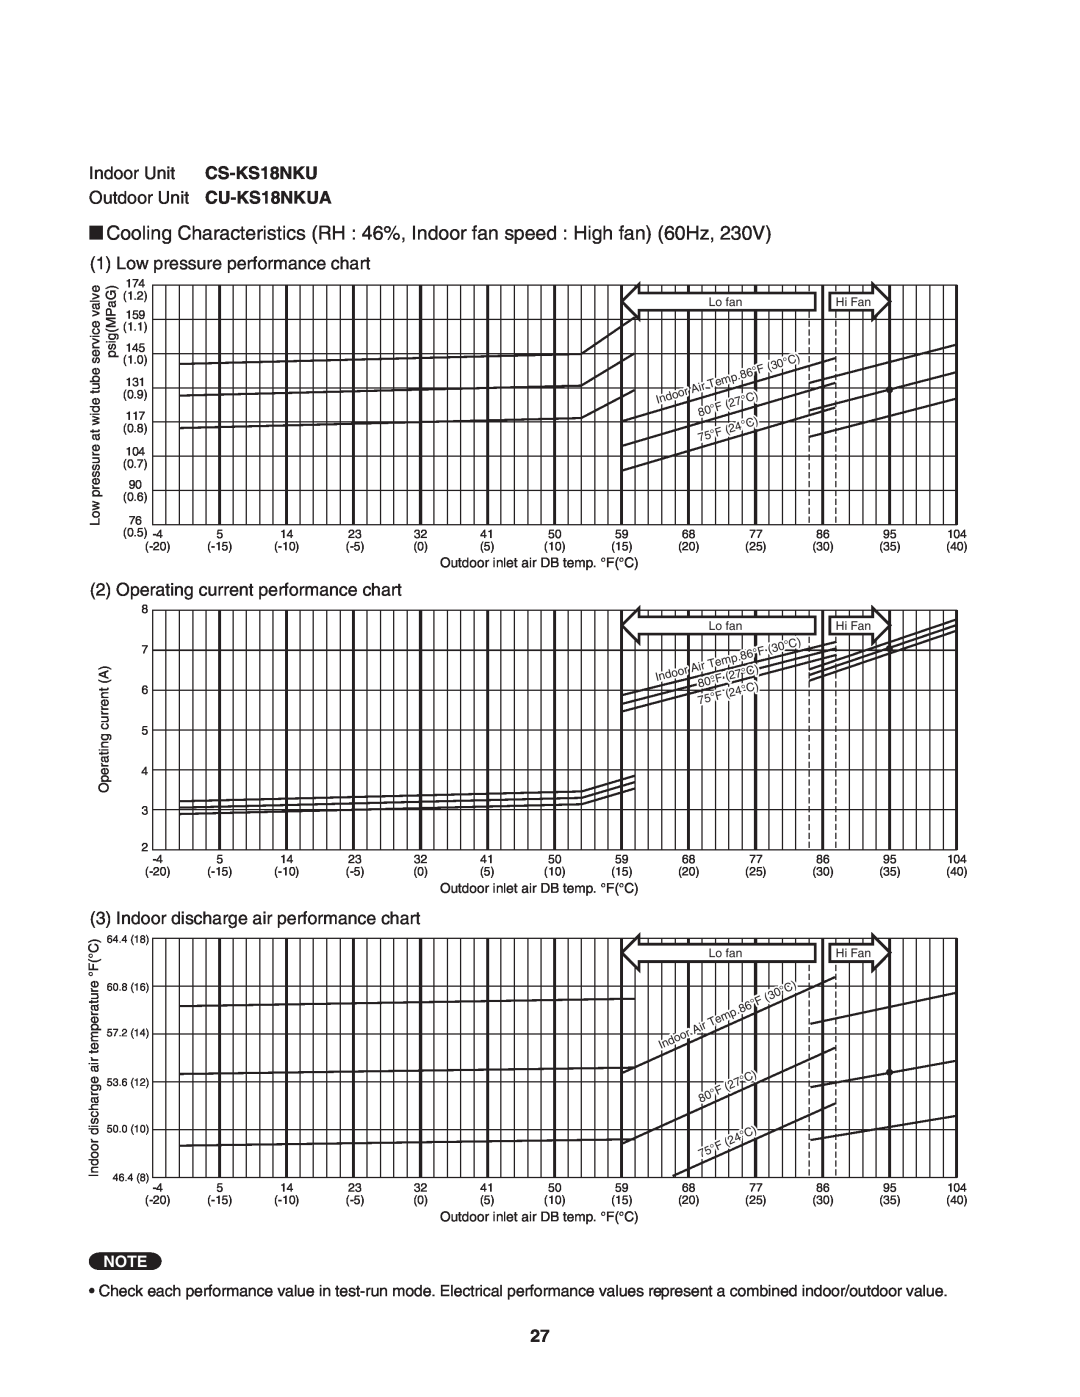 Panasonic CU-KS24NKU, CS-KS24NKU Indoor Unit CS-KS18NKU Outdoor Unit CU-KS18NKUA, Low pressure performance chart 